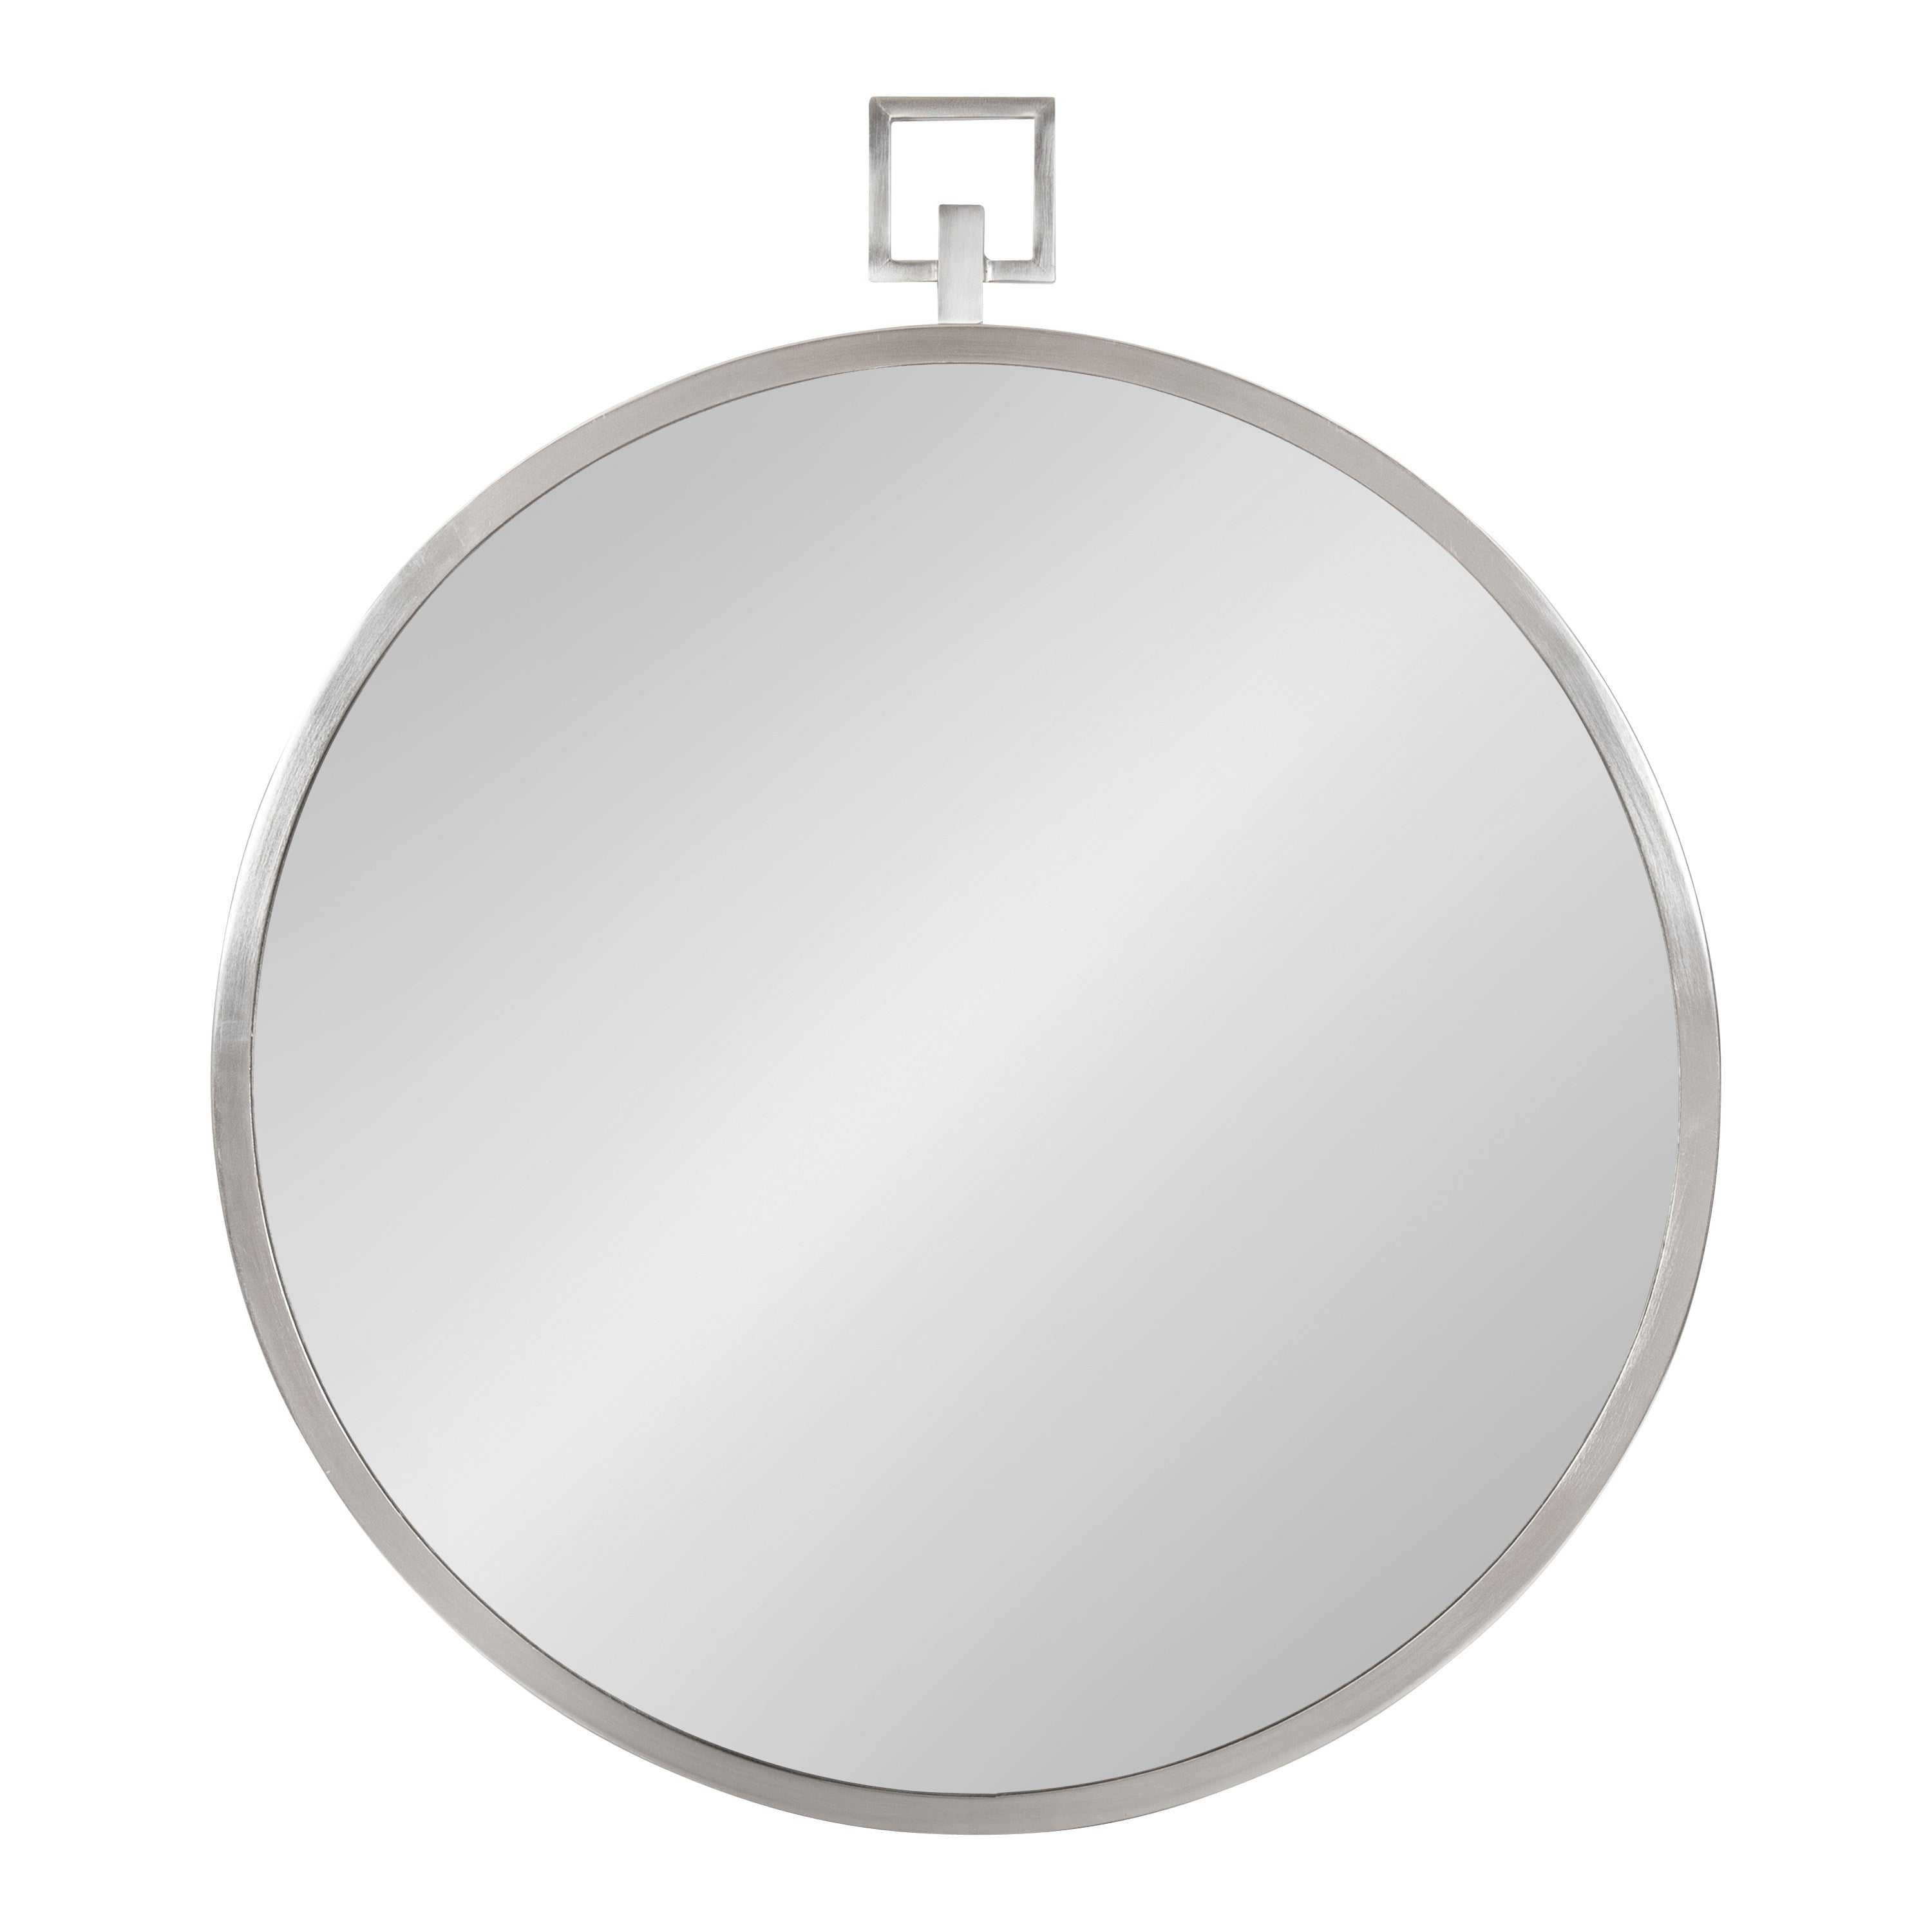 Tabb Round Framed Mirror